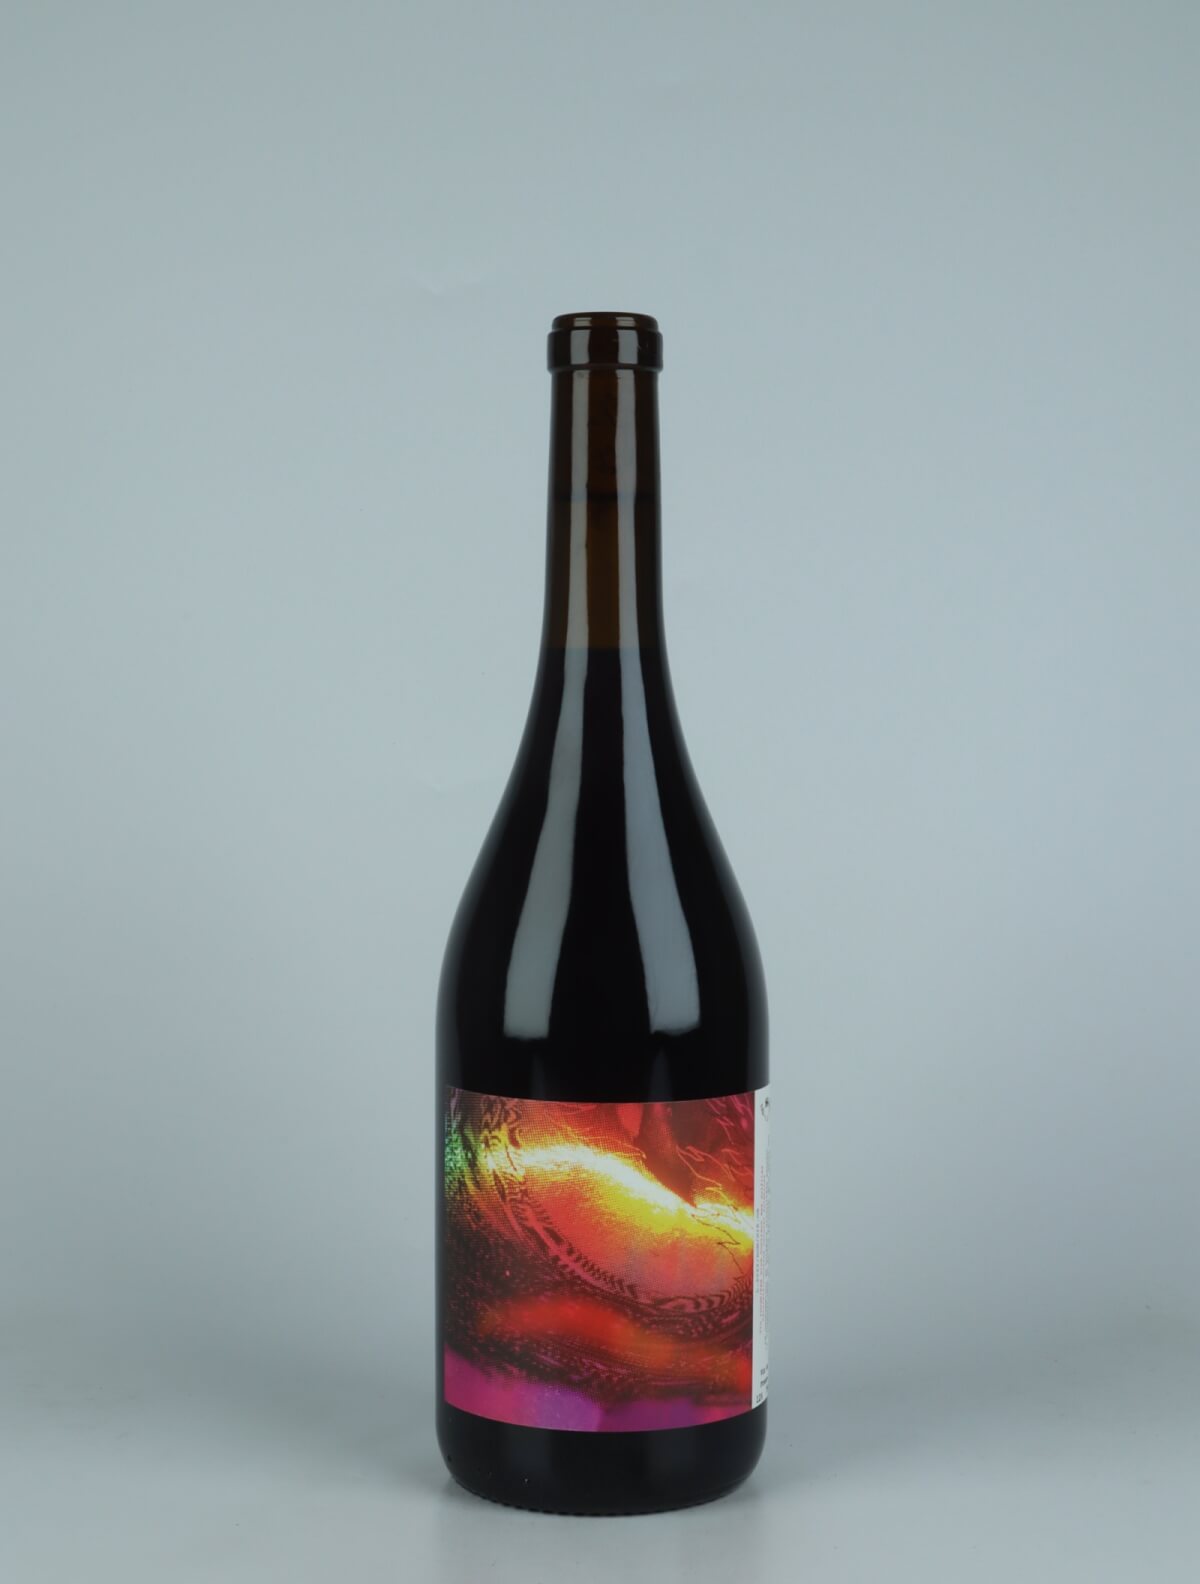 En flaske 2022 Brise de Mer Rødvin fra Ad Vinum, Gard i Frankrig